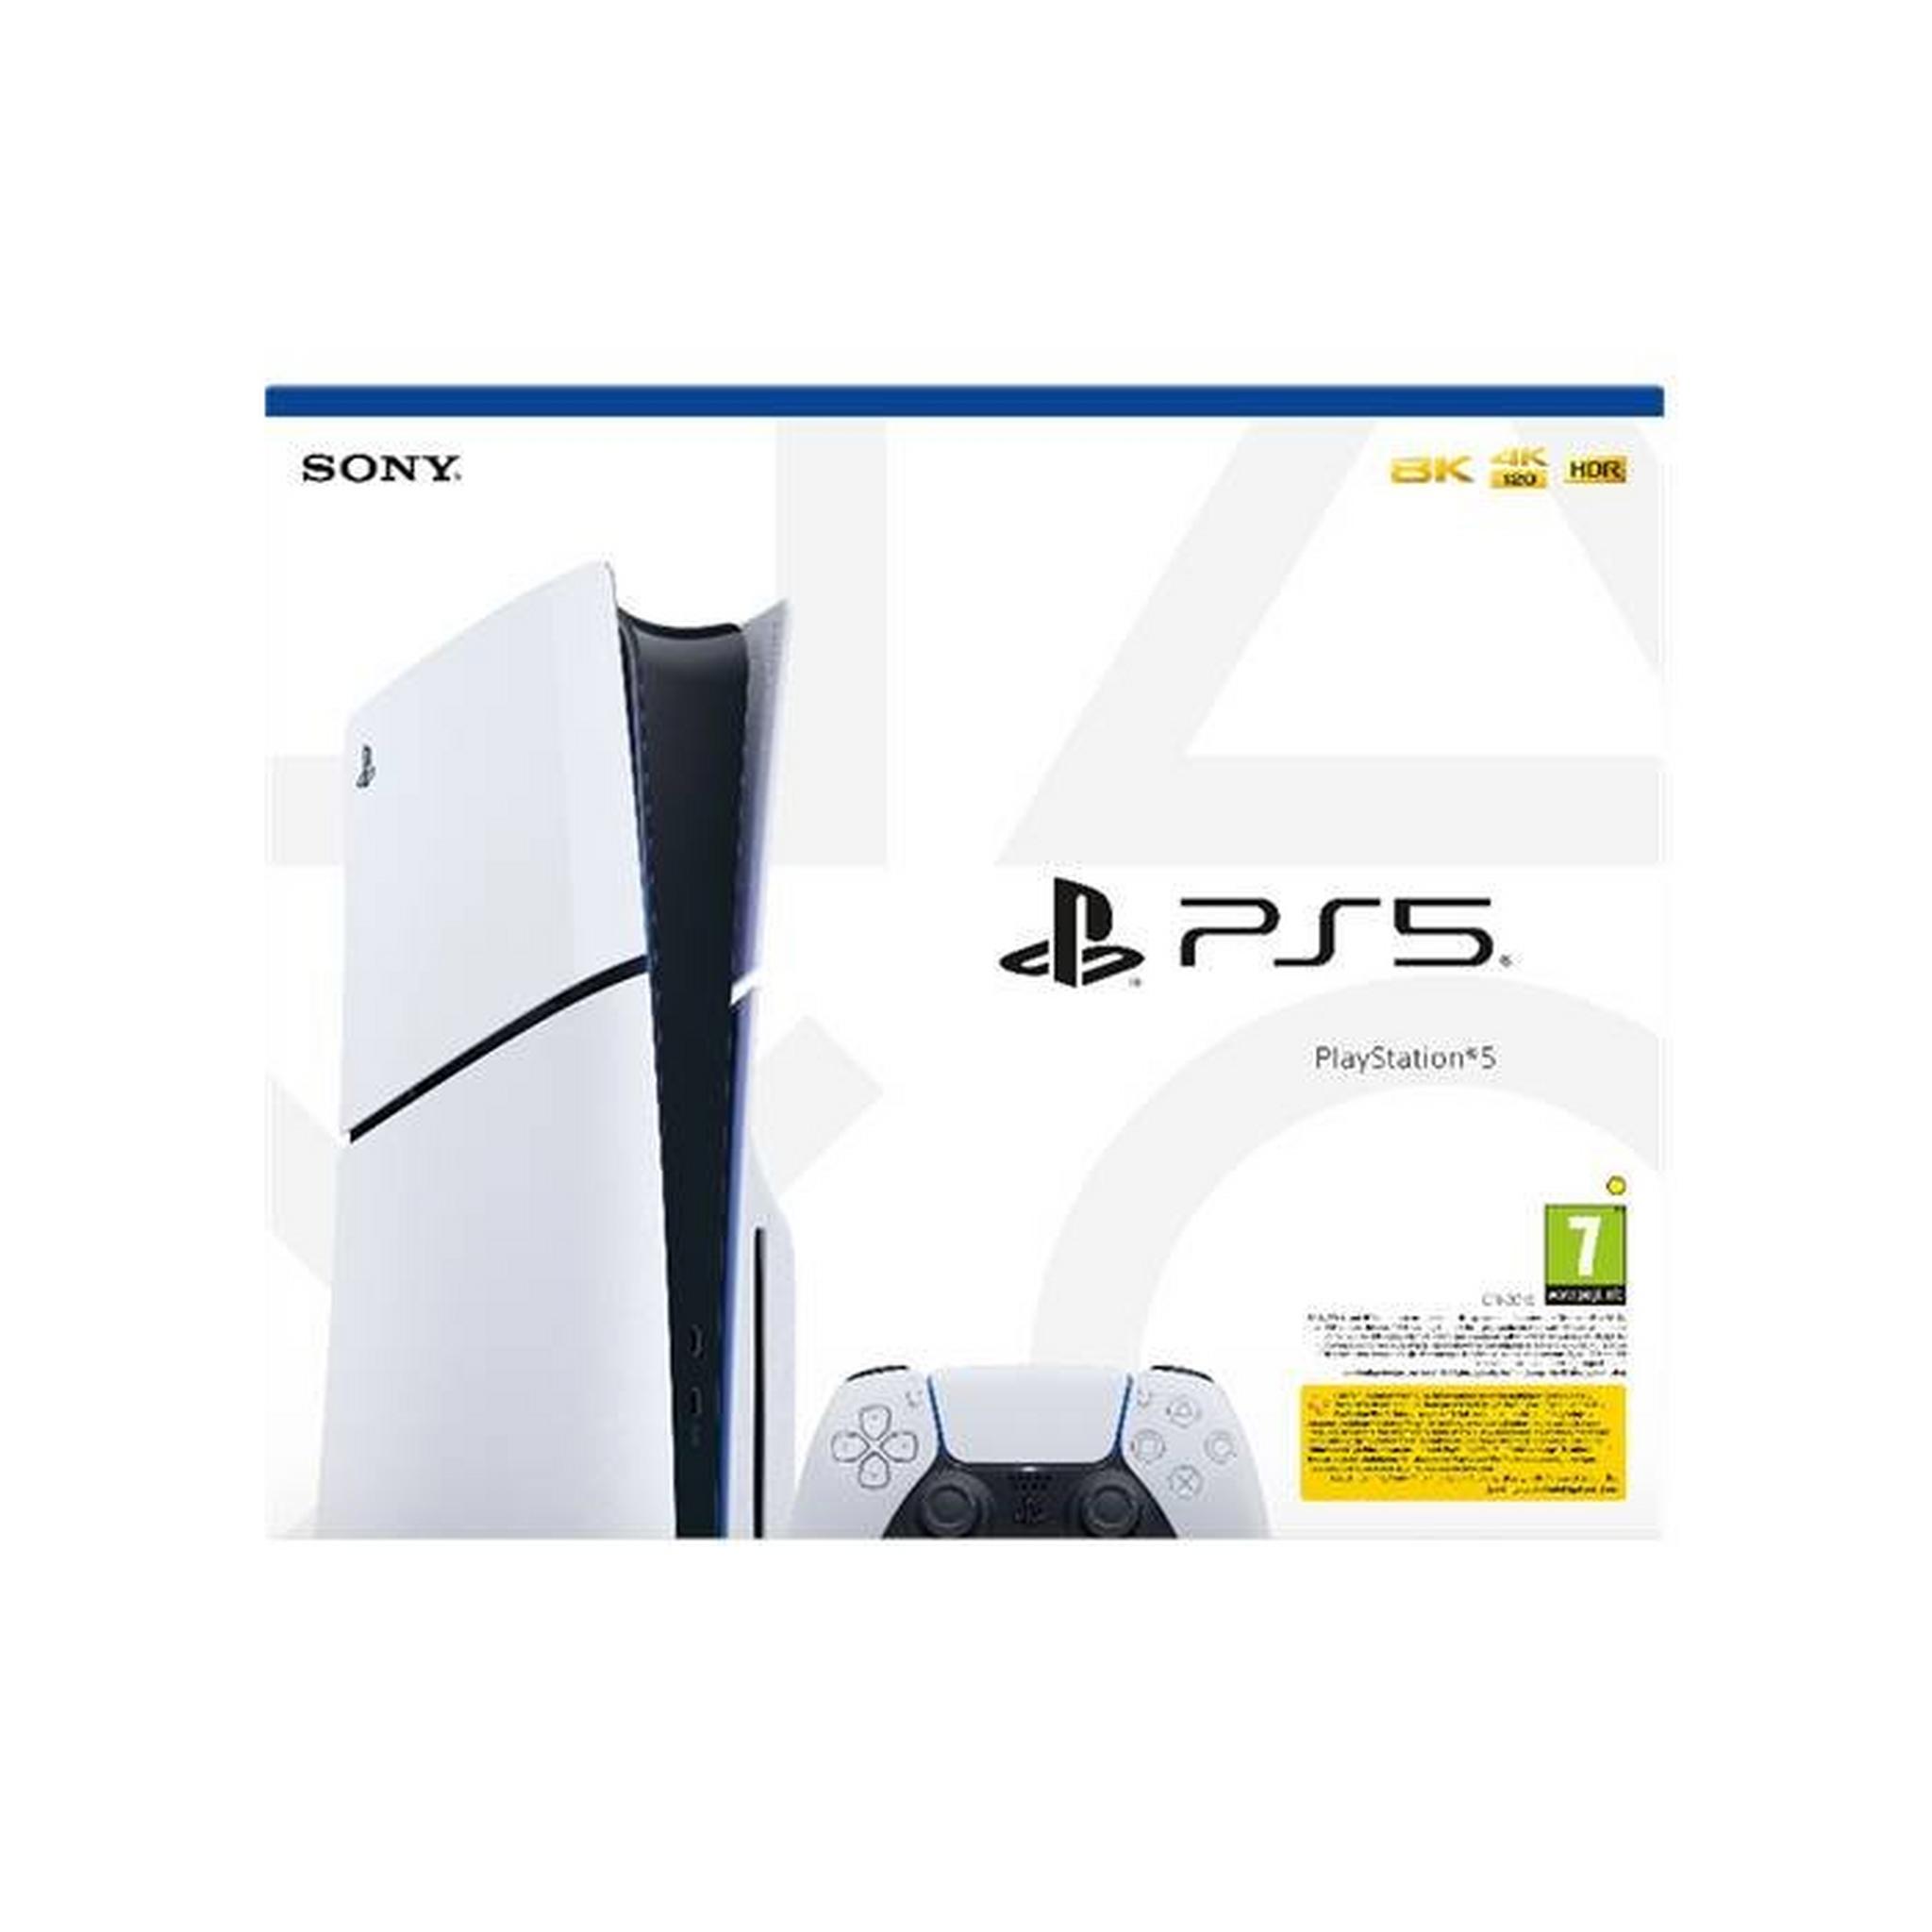 Sony PlayStation 5 Slim - Disc Edition Console, CFI-2016A01Y – White